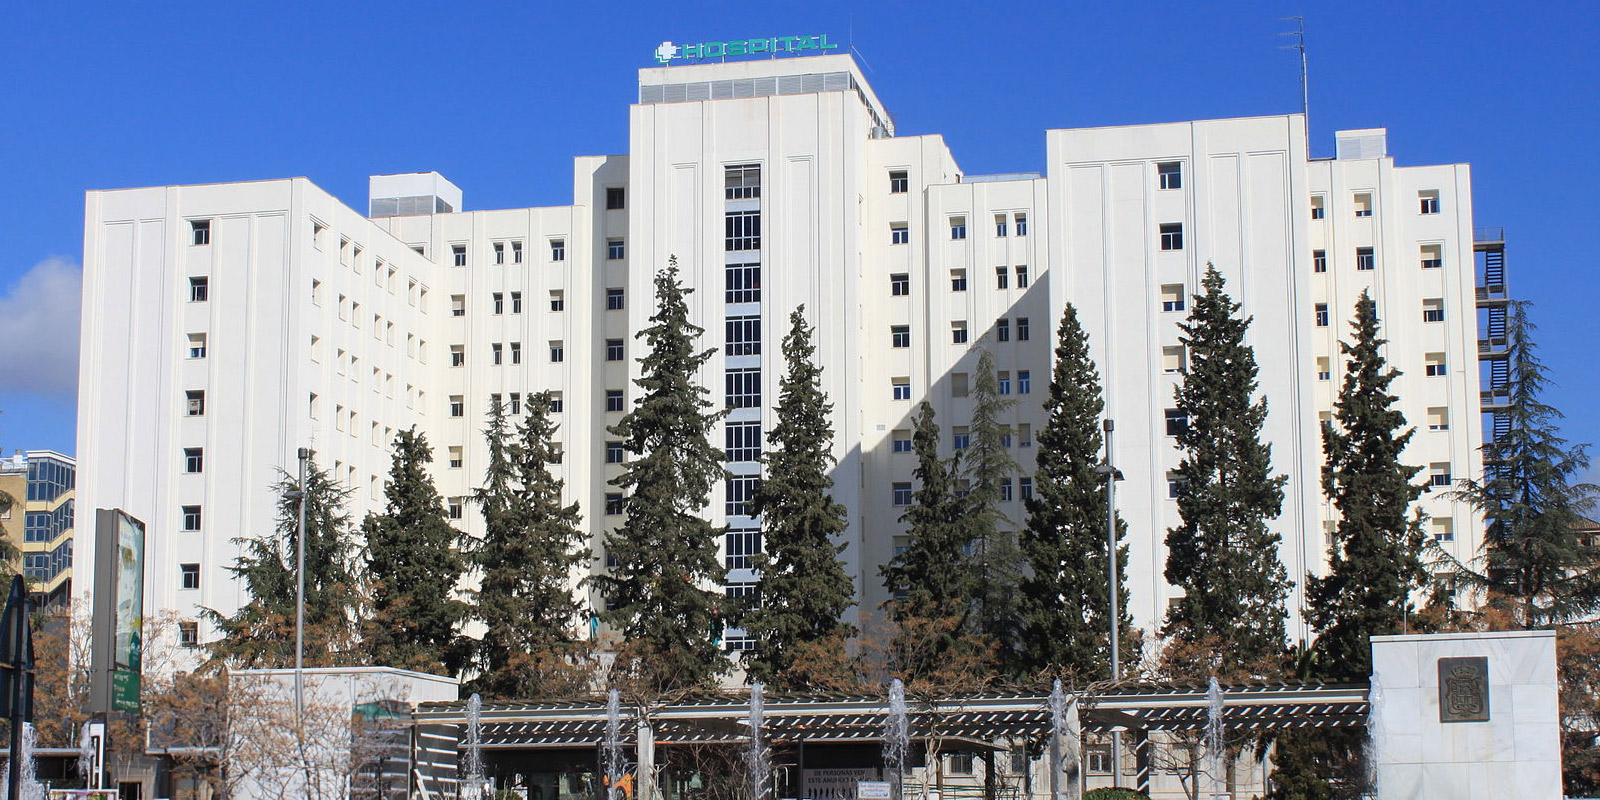 Hospital Universitario Virgen de las Nieves